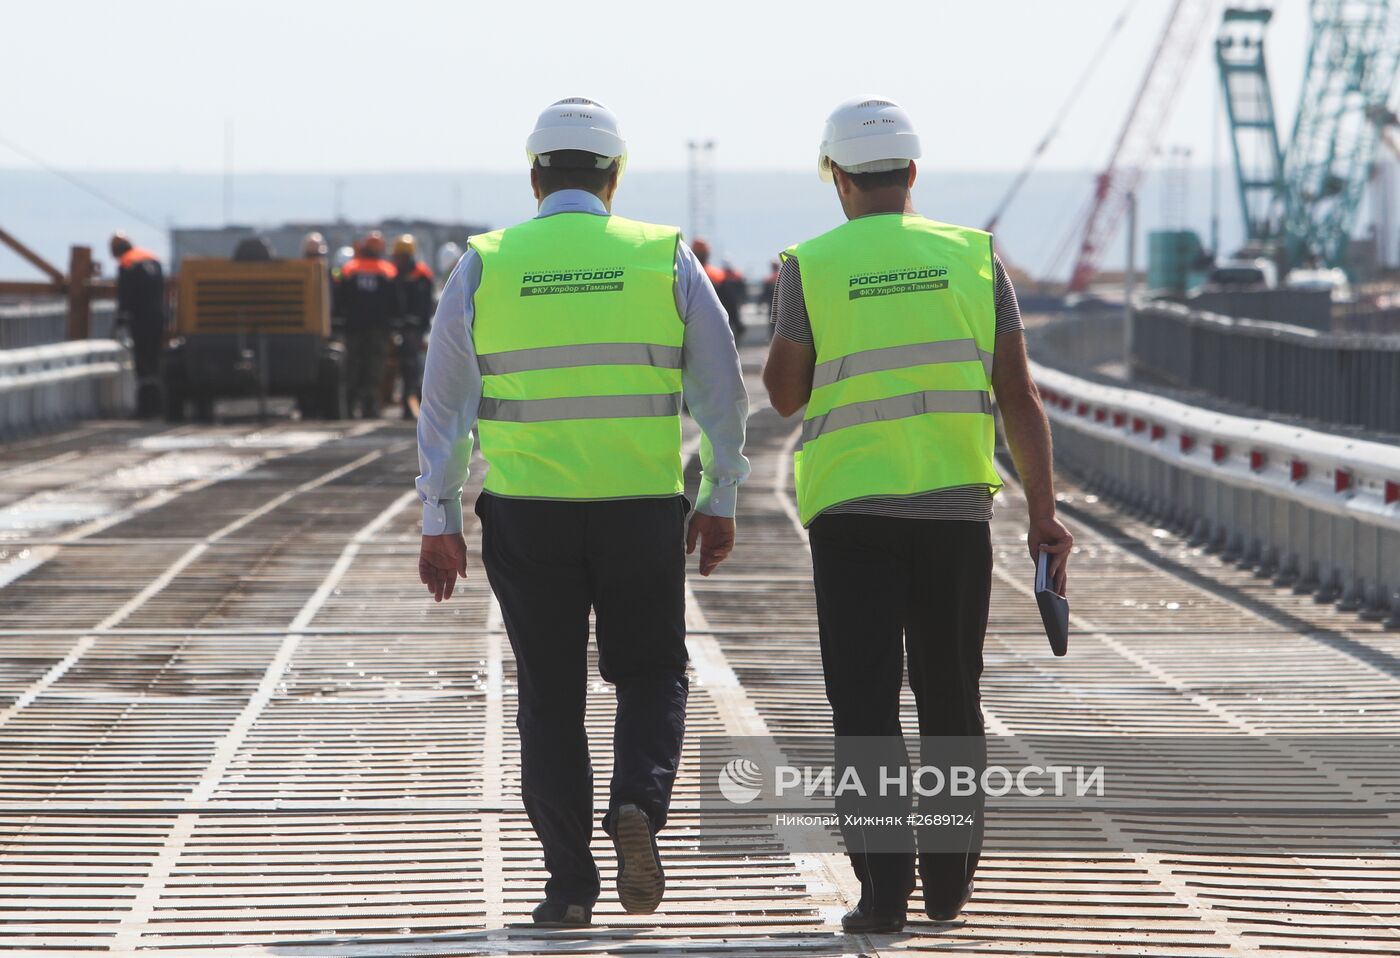 Подготовительные работы перед строительством Керченского моста в Тамани